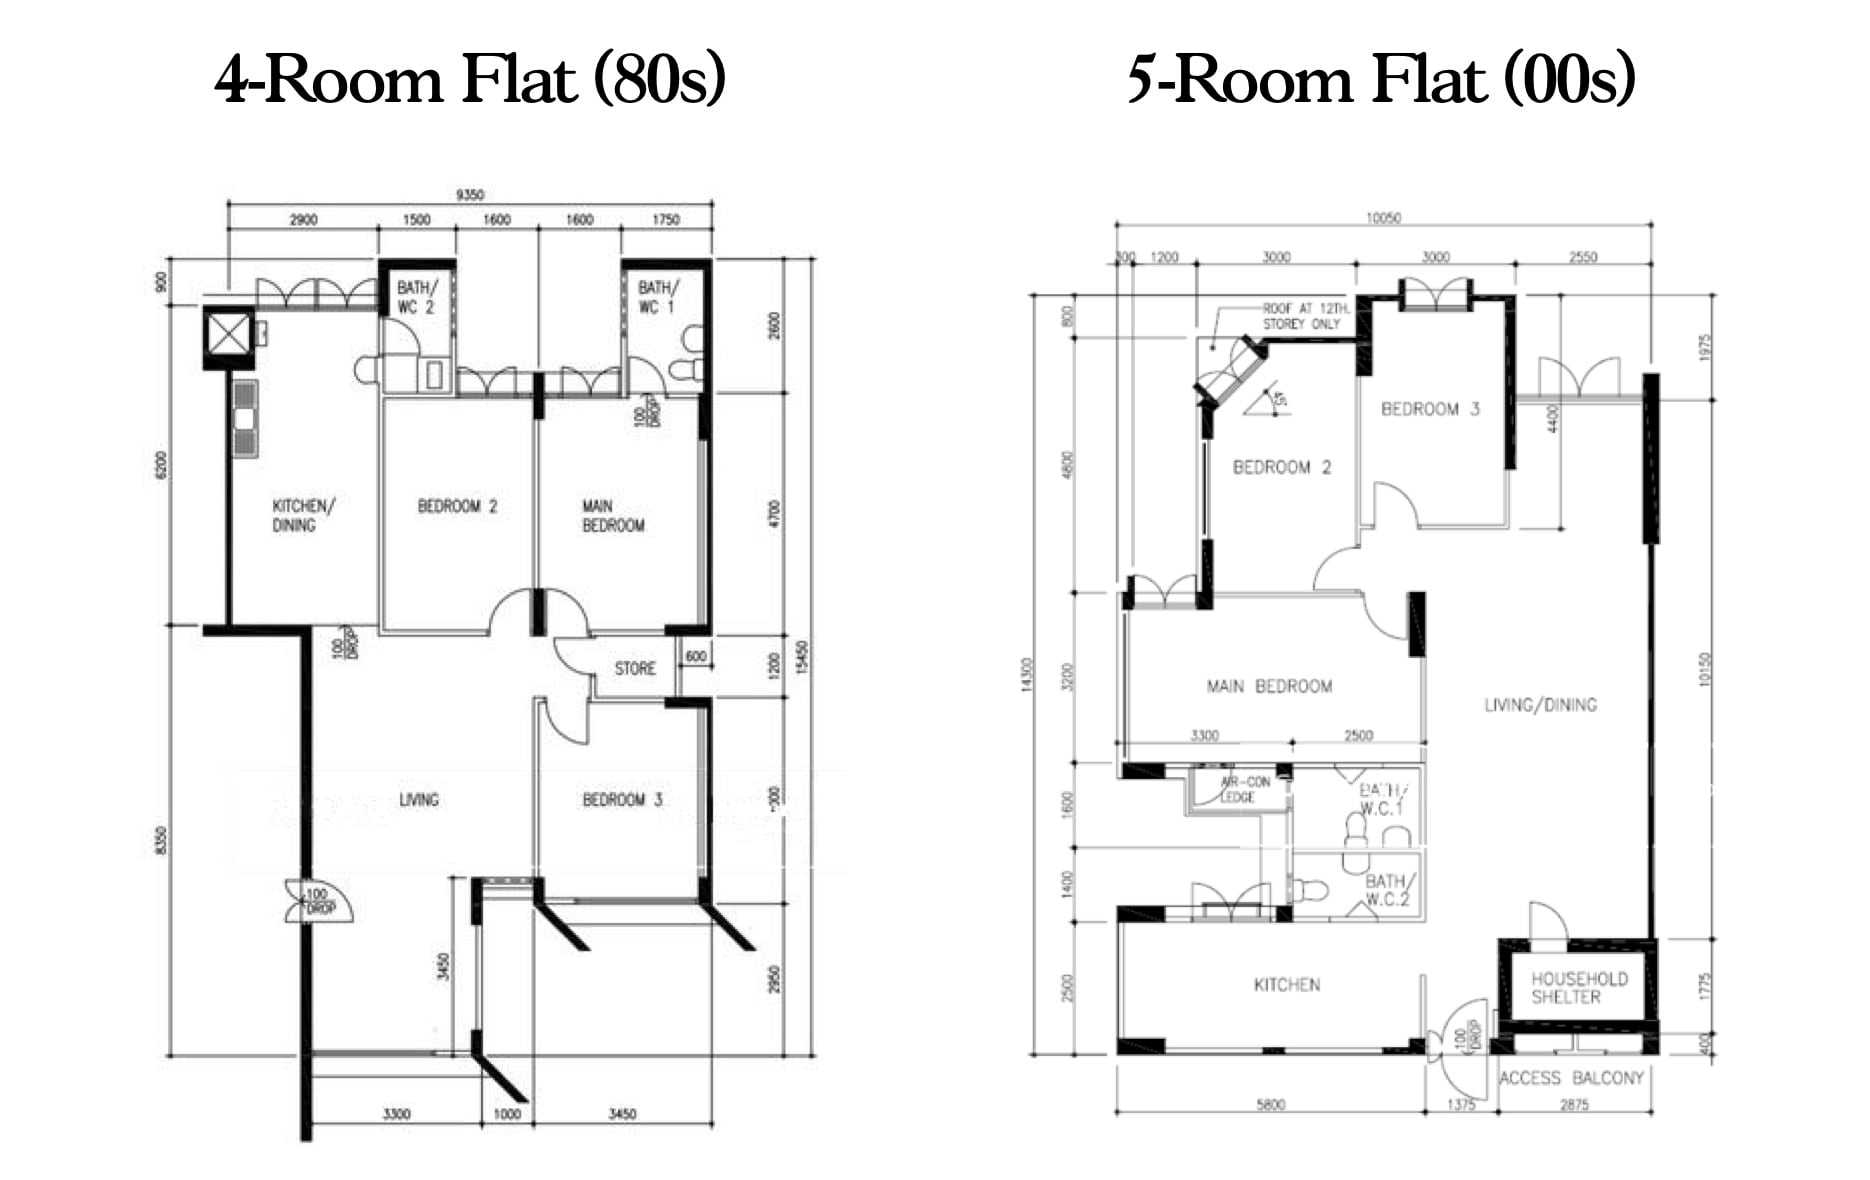 4 room flat 5 room flat comparison 2